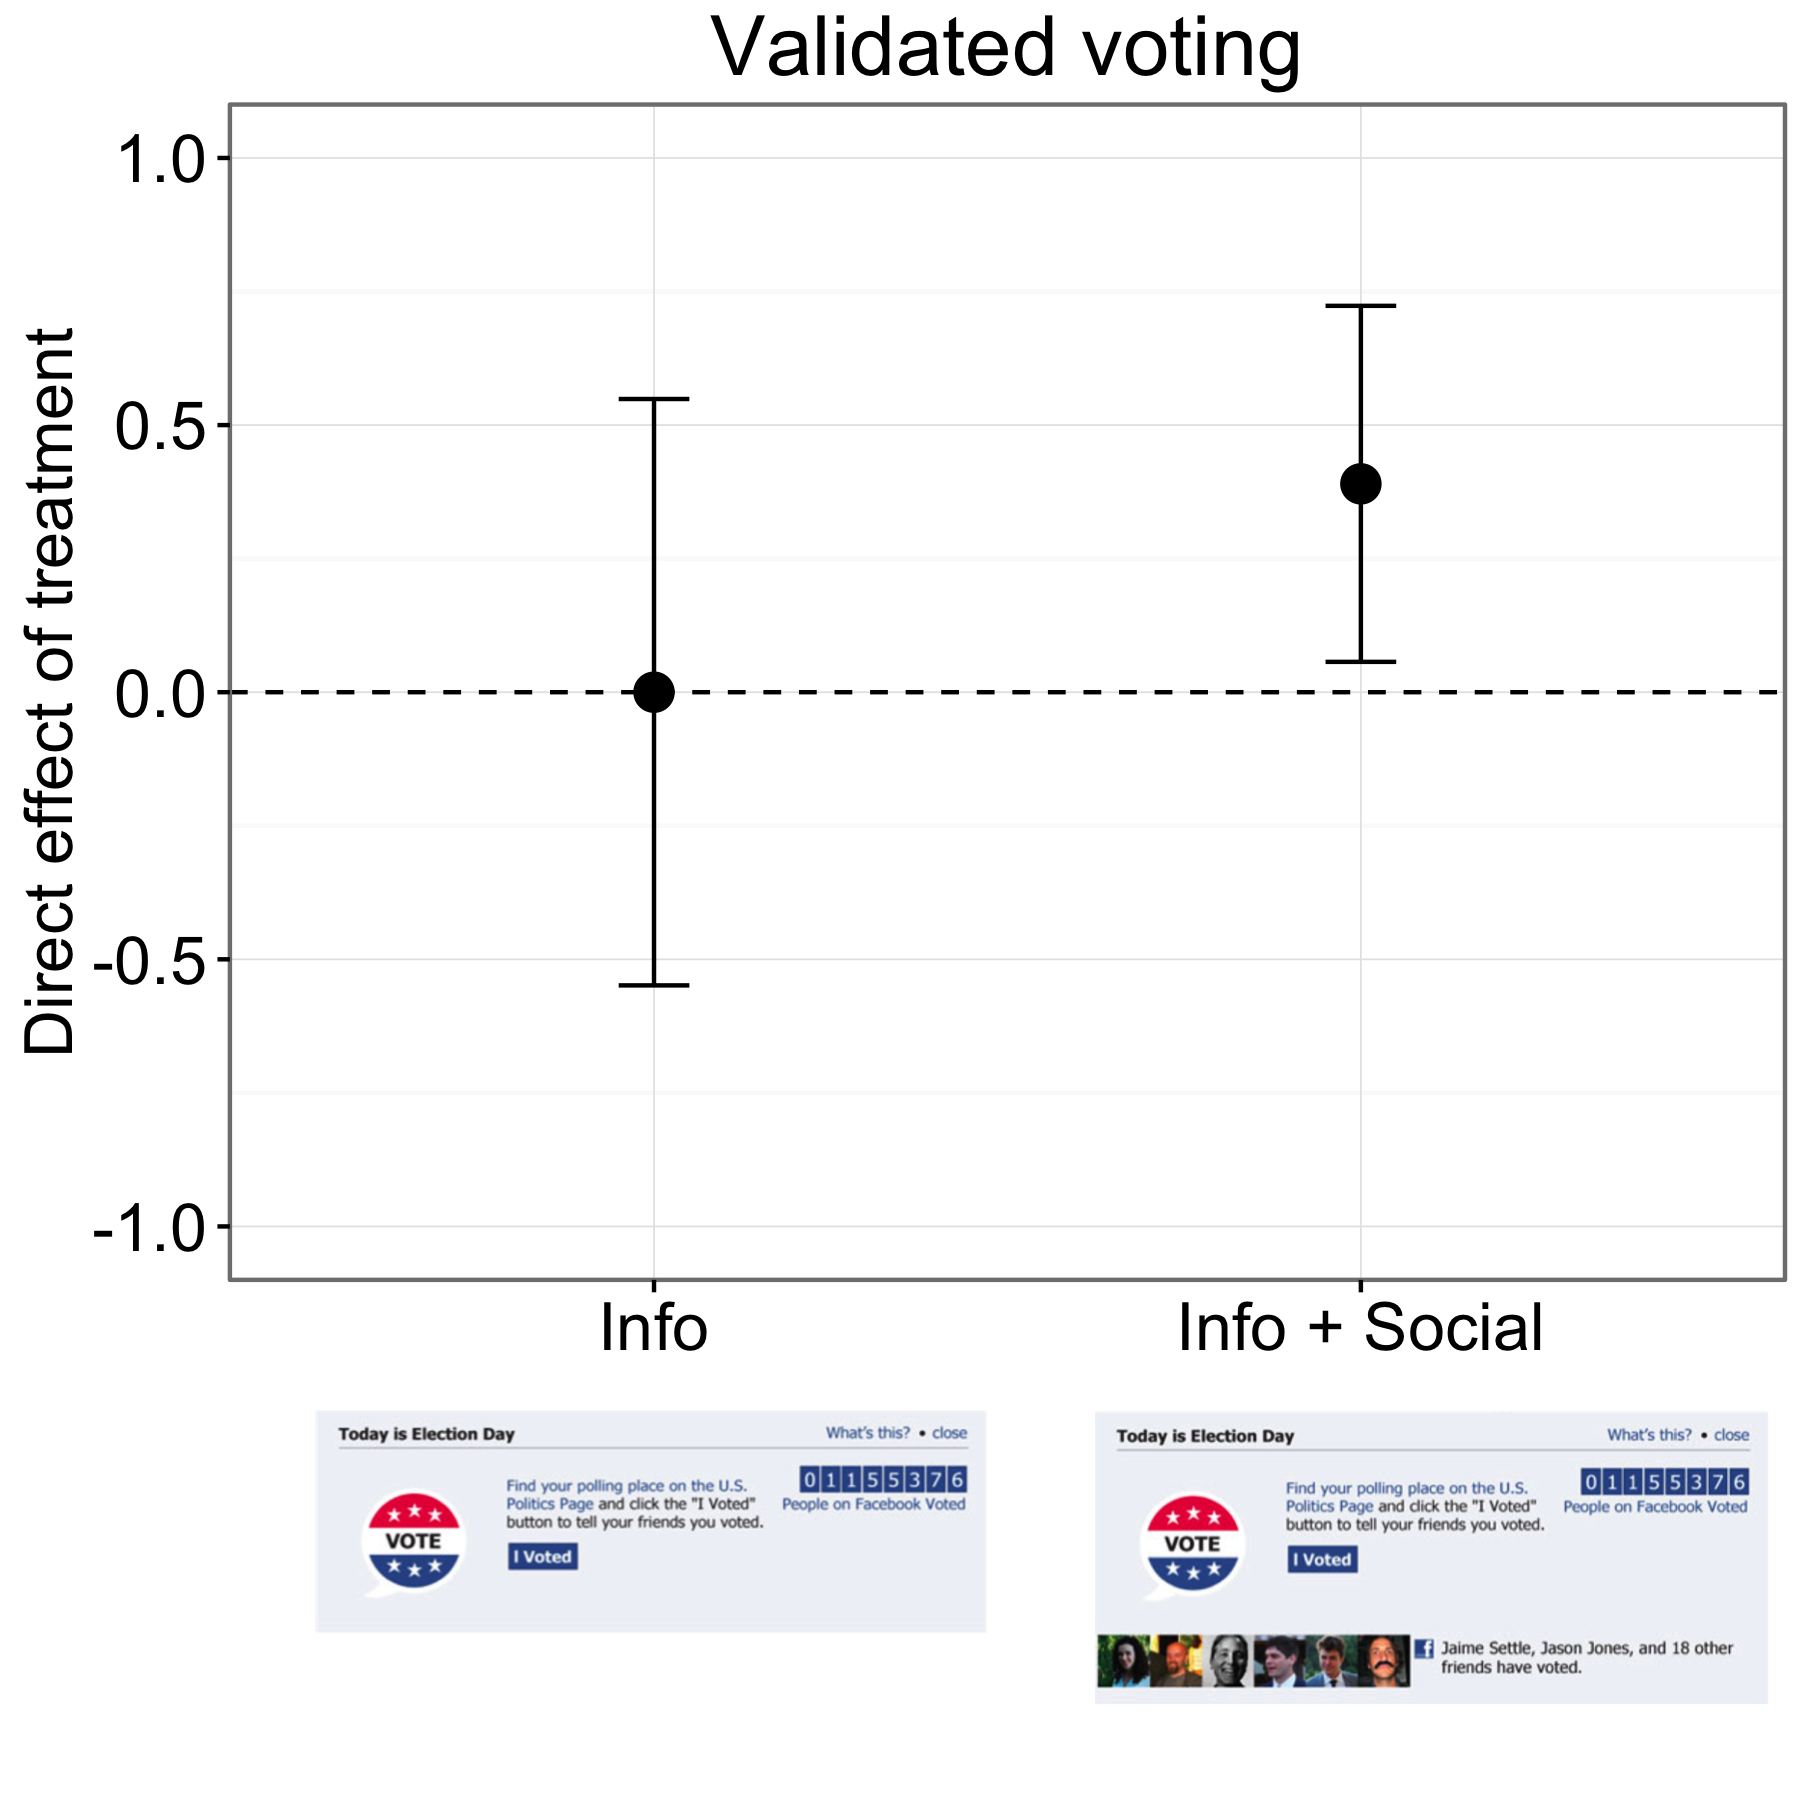 Σχήμα 4.18: Αποτελέσματα από ένα πείραμα μετάβασης στο Facebook (Bond et al., 2012). Οι συμμετέχοντες στην ομάδα πληροφοριών ψήφισαν με τον ίδιο ρυθμό με εκείνους της ομάδας ελέγχου, αλλά οι άνθρωποι της ομάδας Info + Social ψήφισαν με ελαφρώς υψηλότερο ποσοστό. Τα μπαρ αντιπροσωπεύουν εκτιμώμενα διαστήματα εμπιστοσύνης 95%. Τα αποτελέσματα στο γράφημα αφορούν περίπου τα έξι εκατομμύρια συμμετέχοντες που αντιστοιχούν σε αρχεία ψηφοφορίας. Προσαρμοσμένη από τους Bond et αϊ. (2012), σχήμα 1.